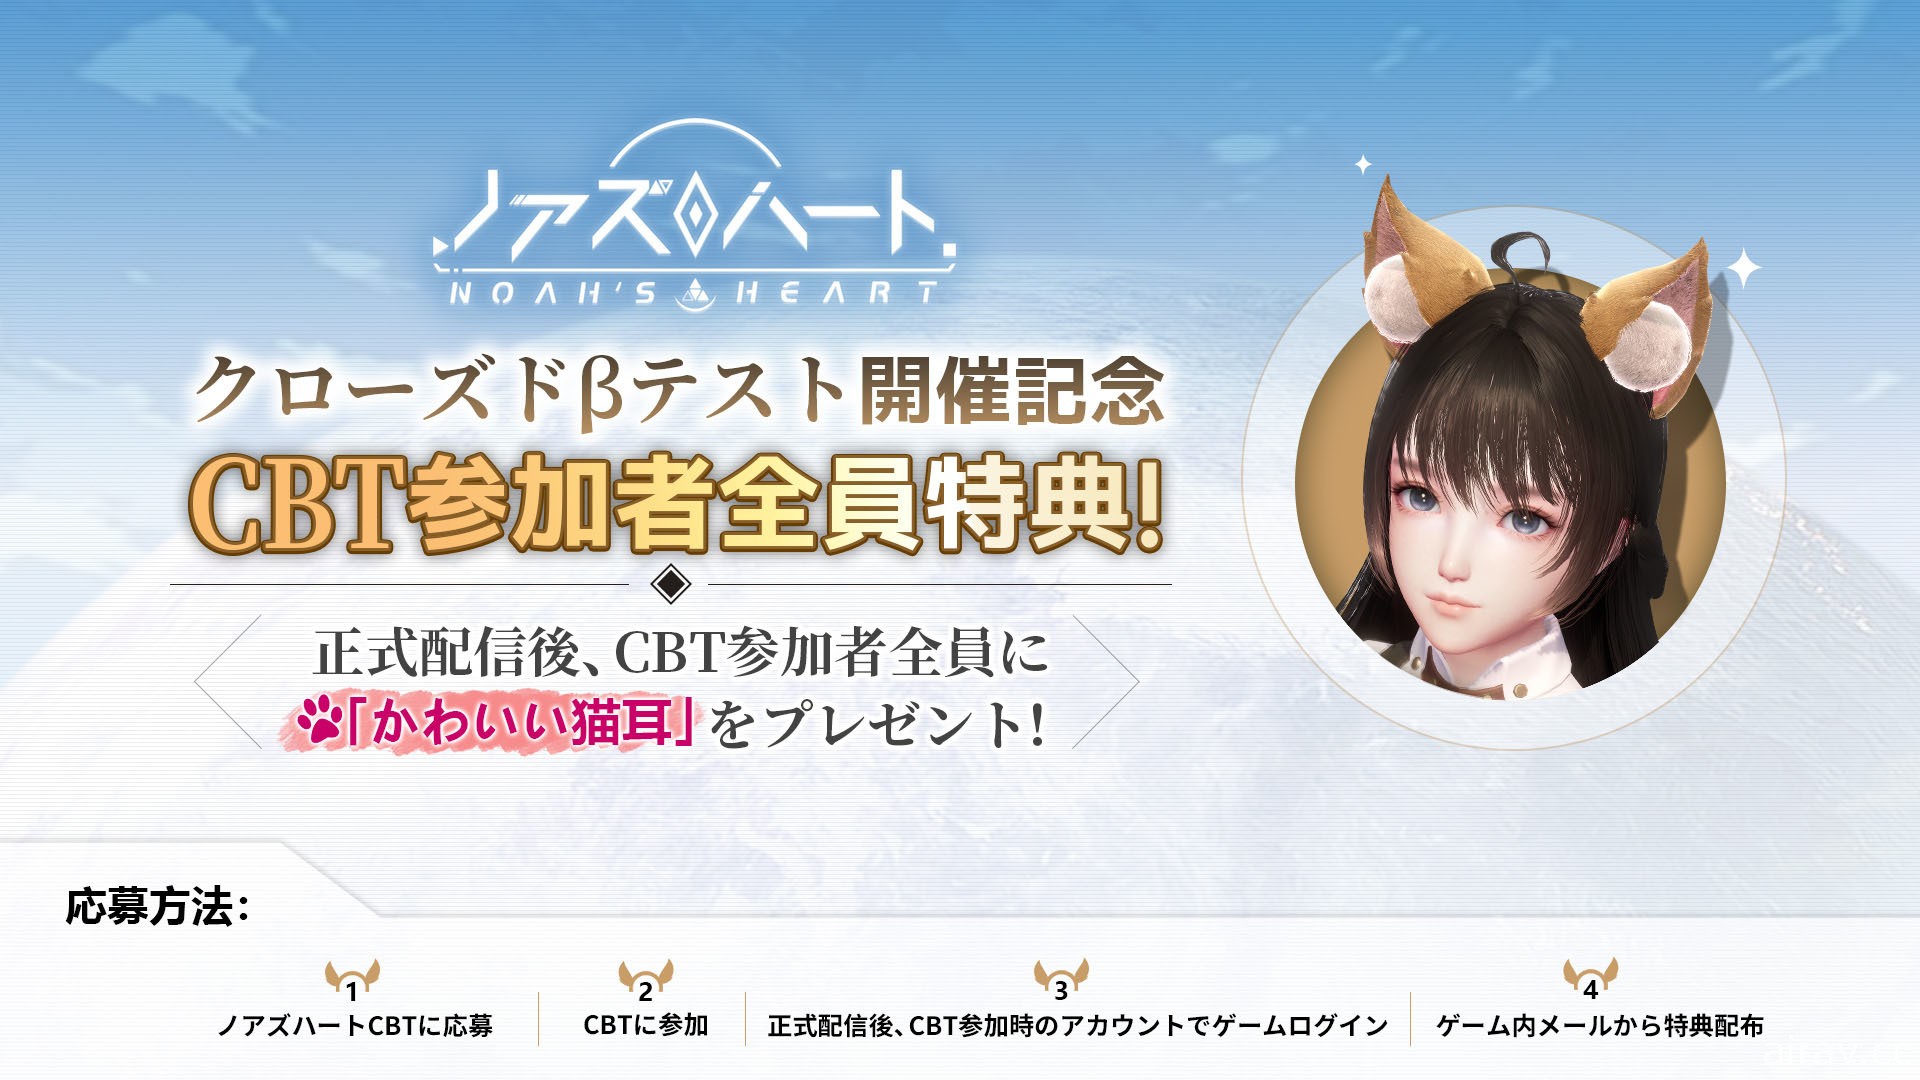 星球探索型開放世界 RPG《諾亞之心》明日於日本展開 CBT 測試